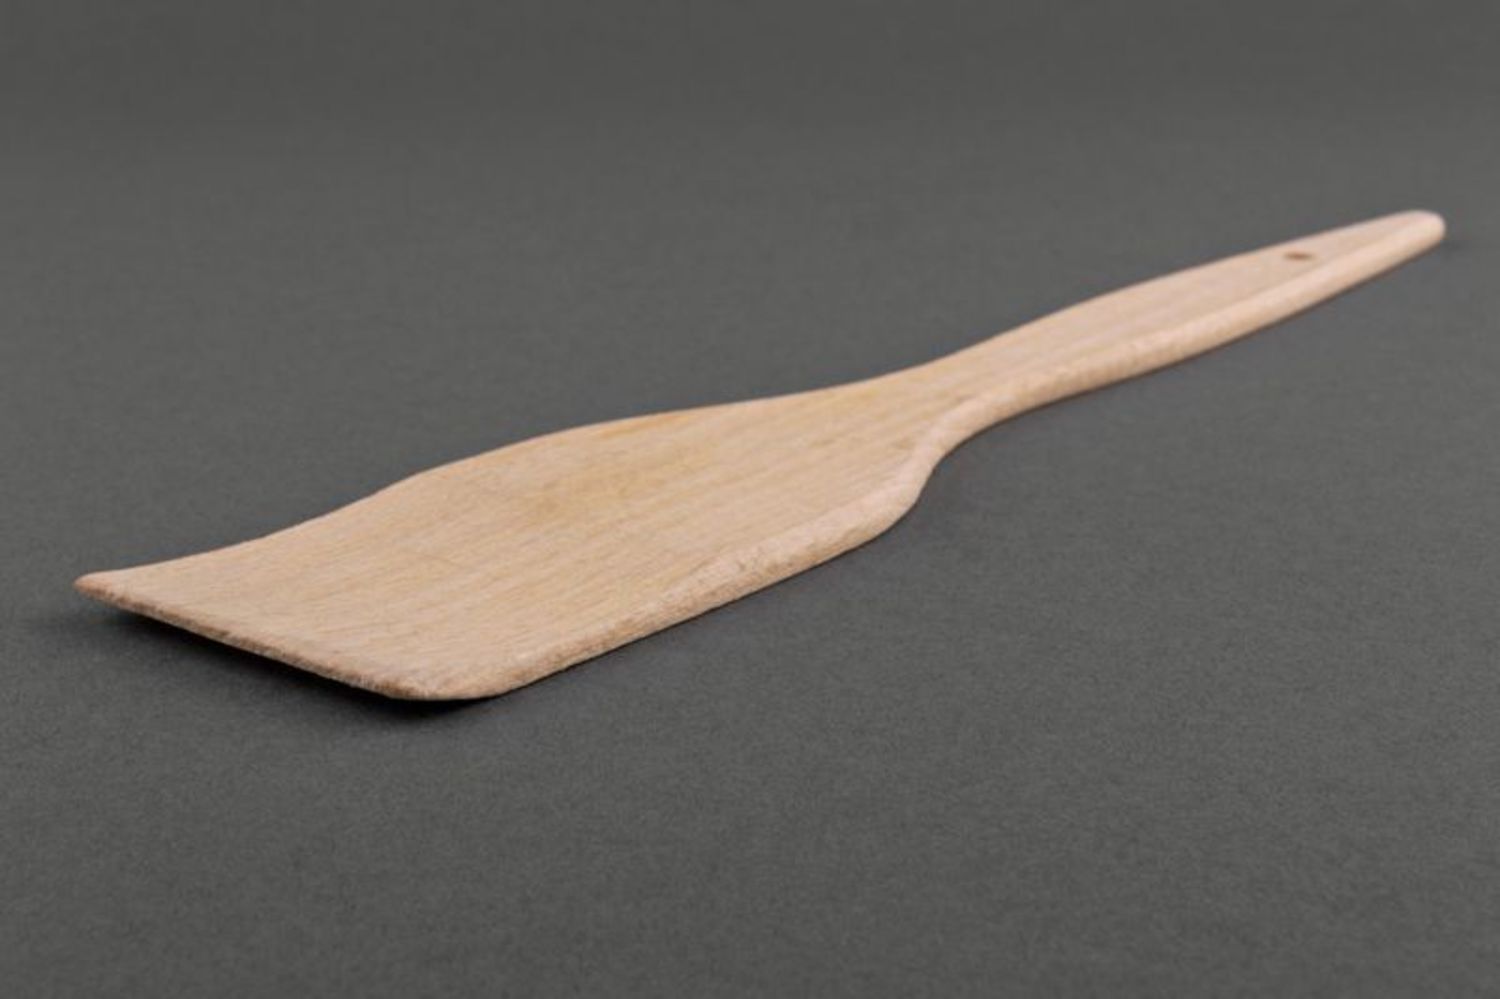 Wooden kitchen spatula photo 4